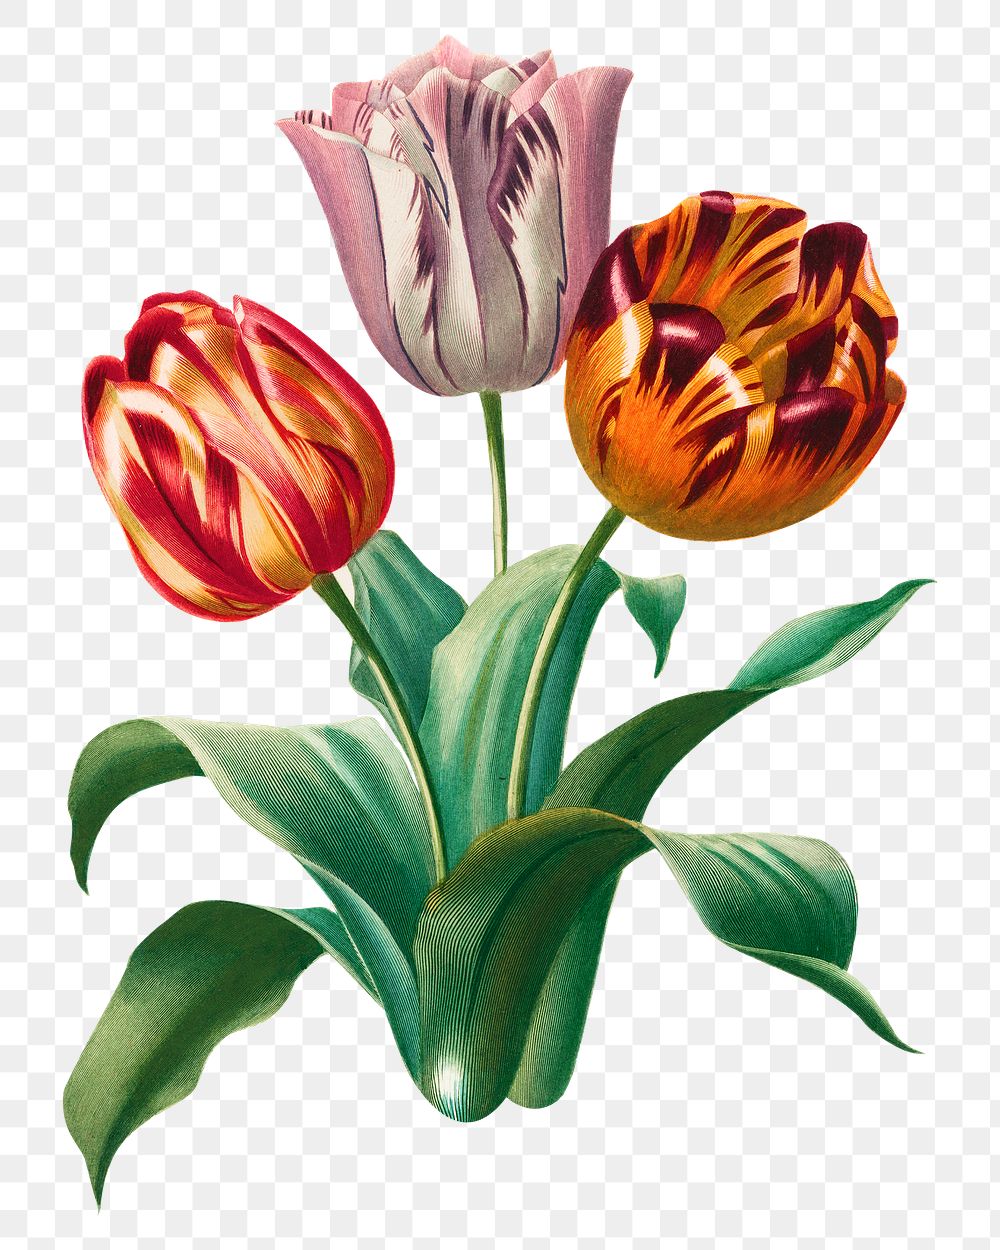 Vintage tulip flower png element, transparent background